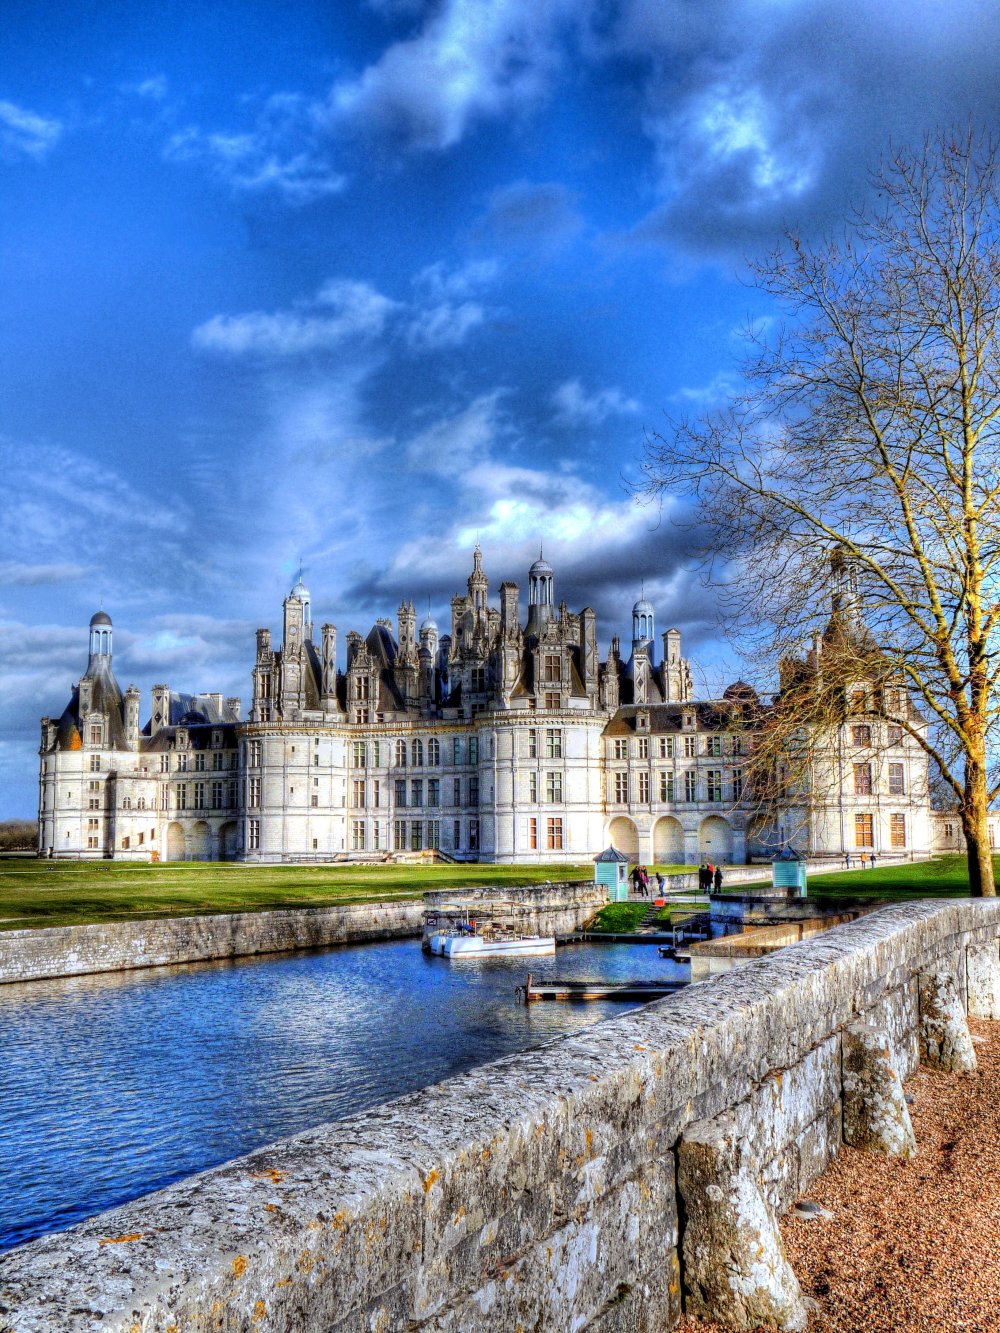 法国著名城堡建筑_8287f186cba3f38a0998fd6ad34461f1.jpg